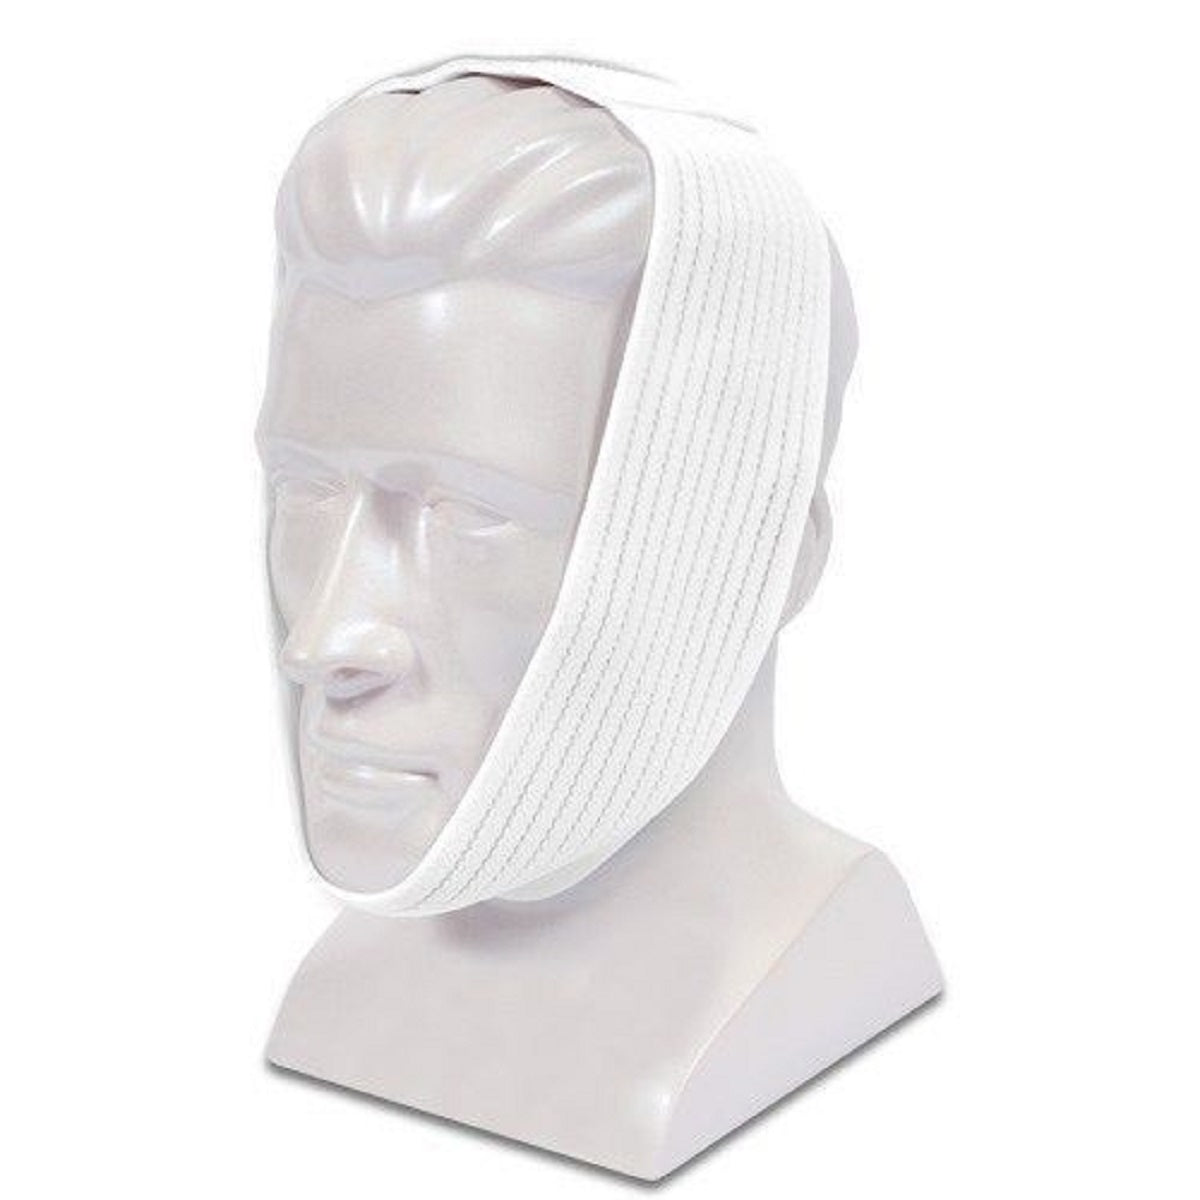 CPAP Masks & Headgear